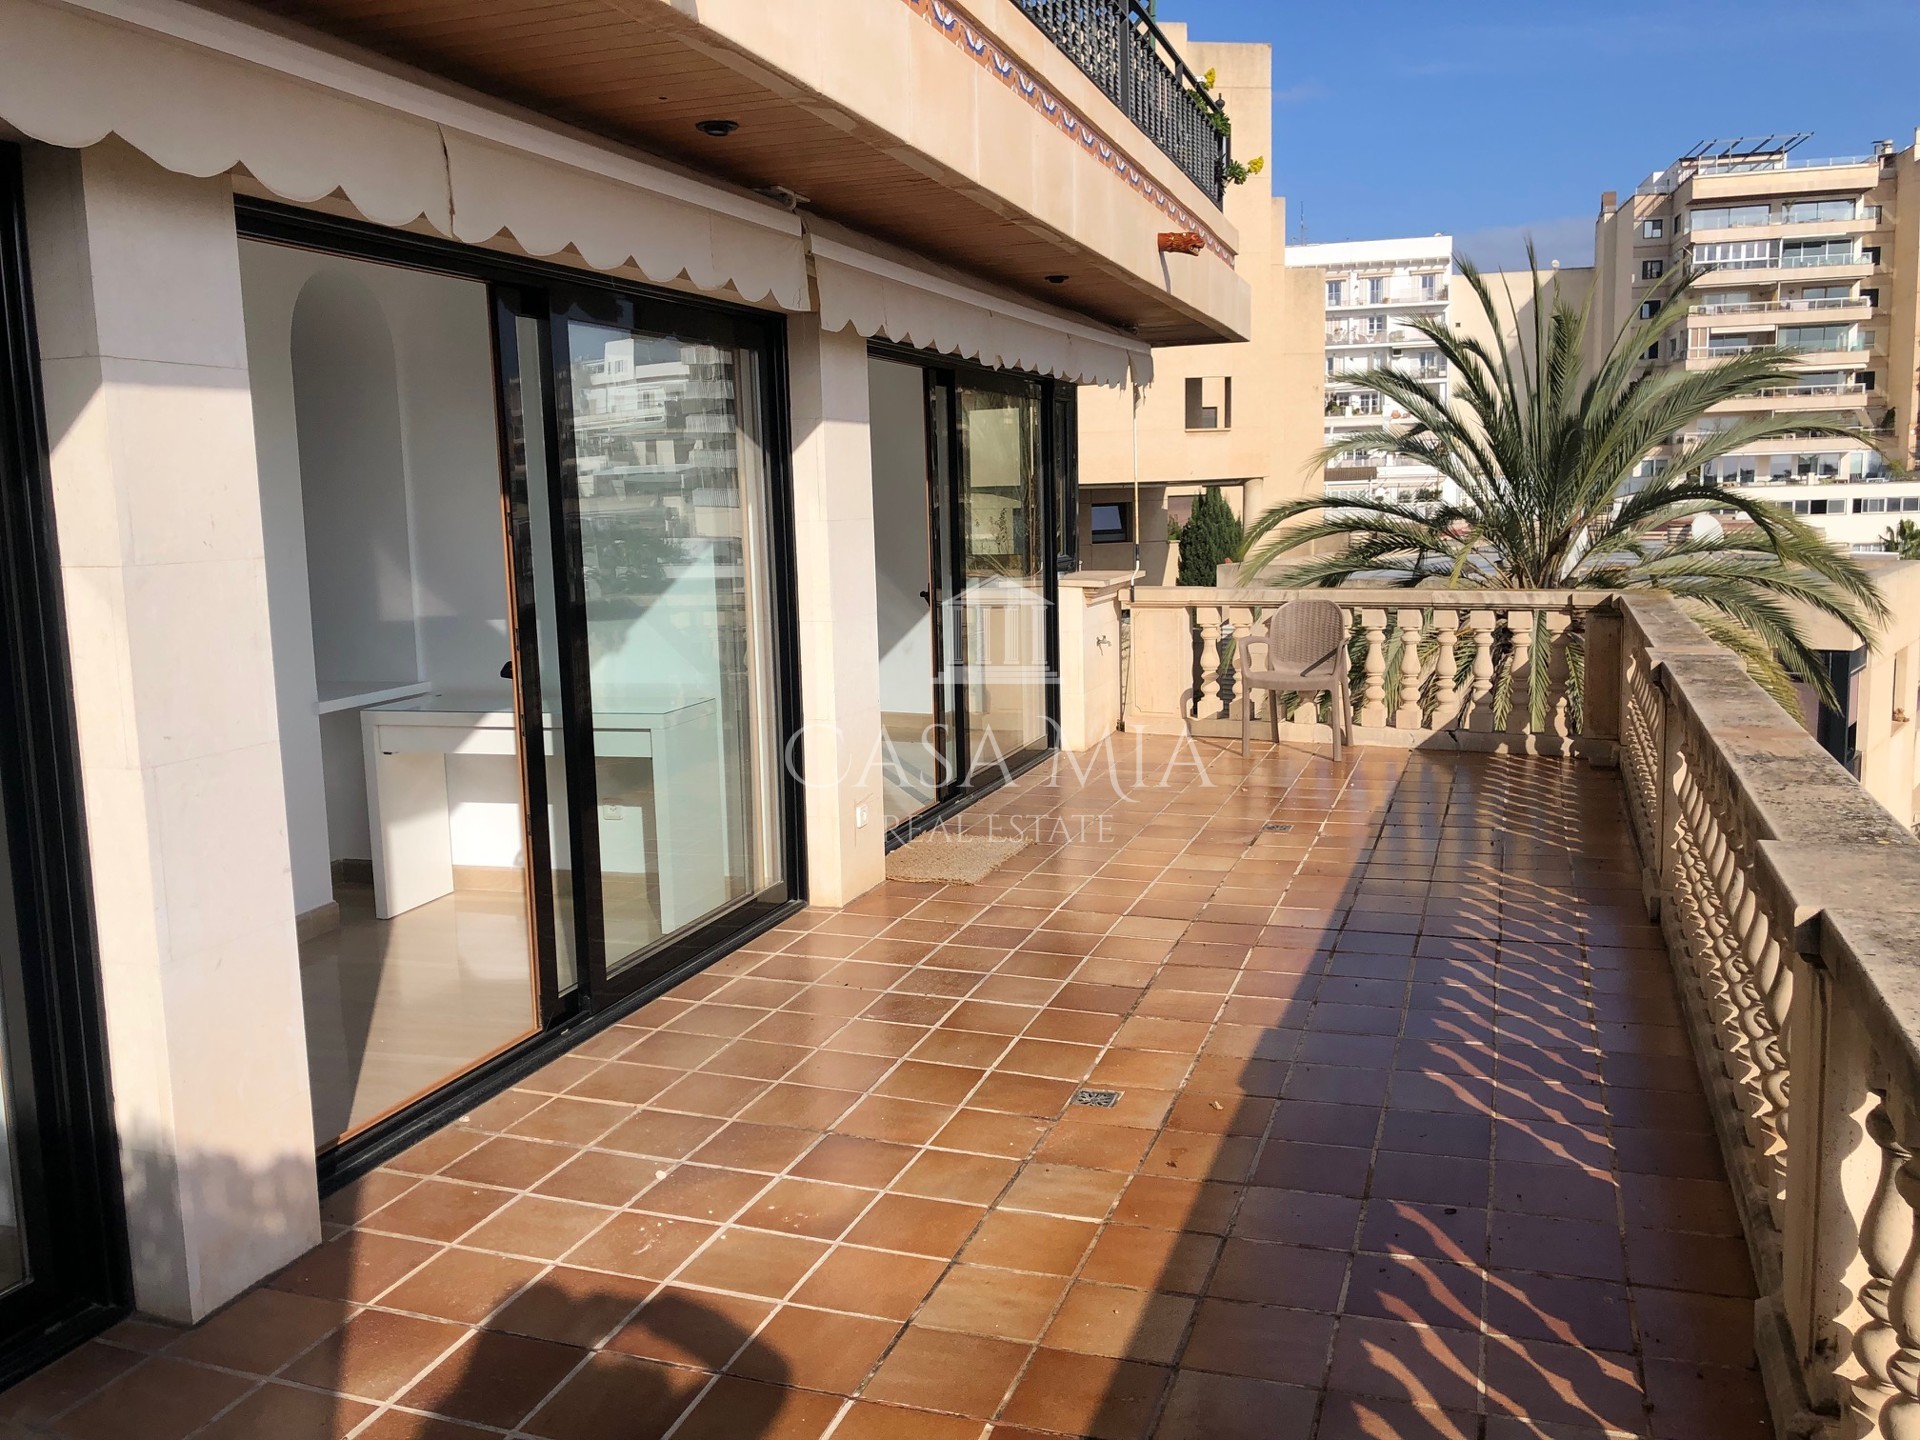 Precioso piso con vistas al mar en el puerto de Can Barbara, Palma